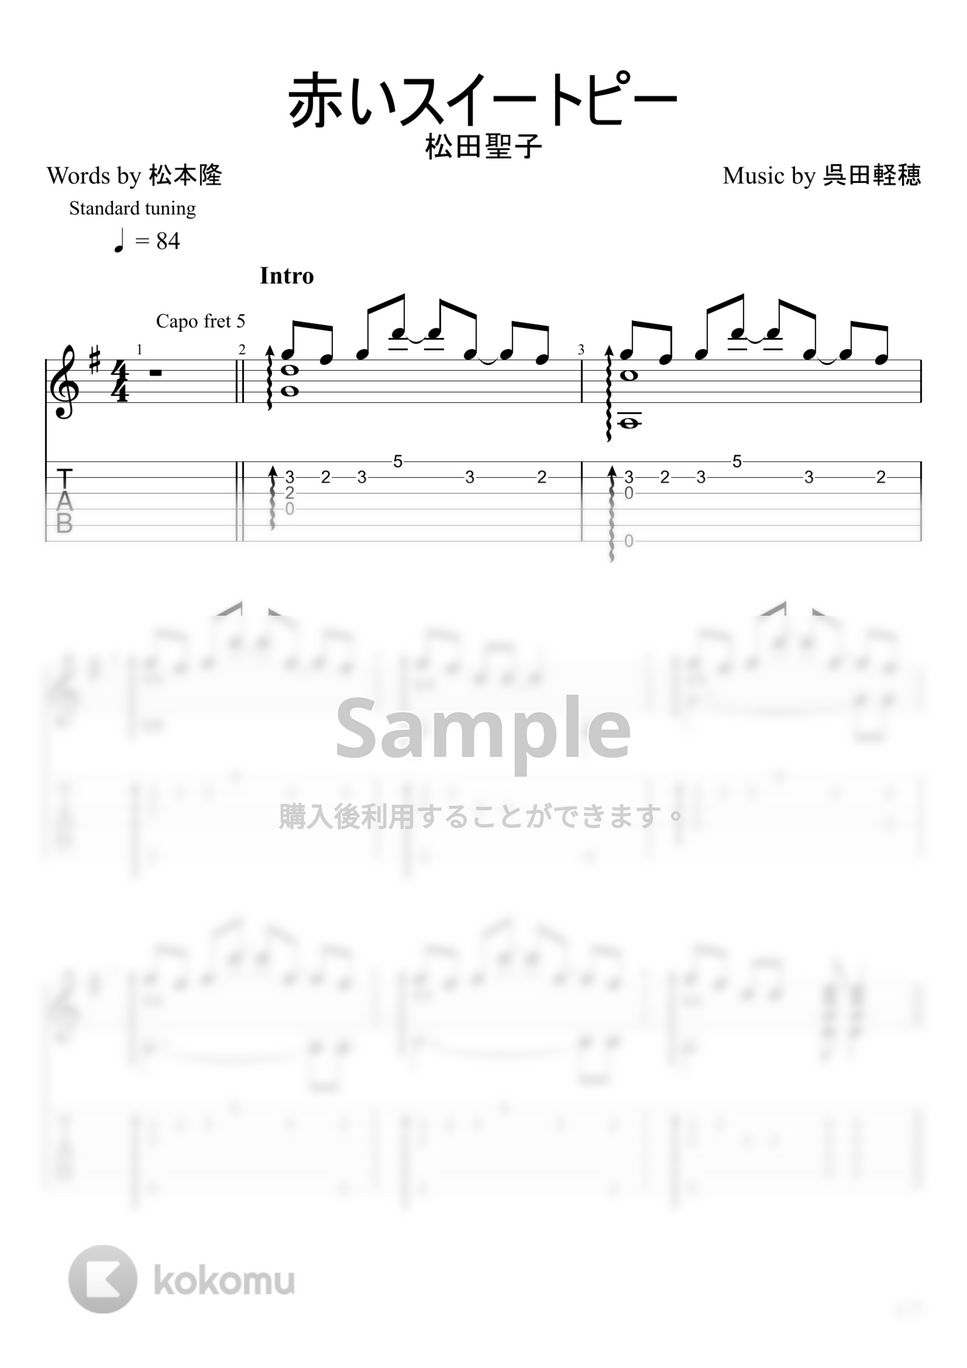 松田聖子 - 赤いスイートピー (ソロギター) by u3danchou